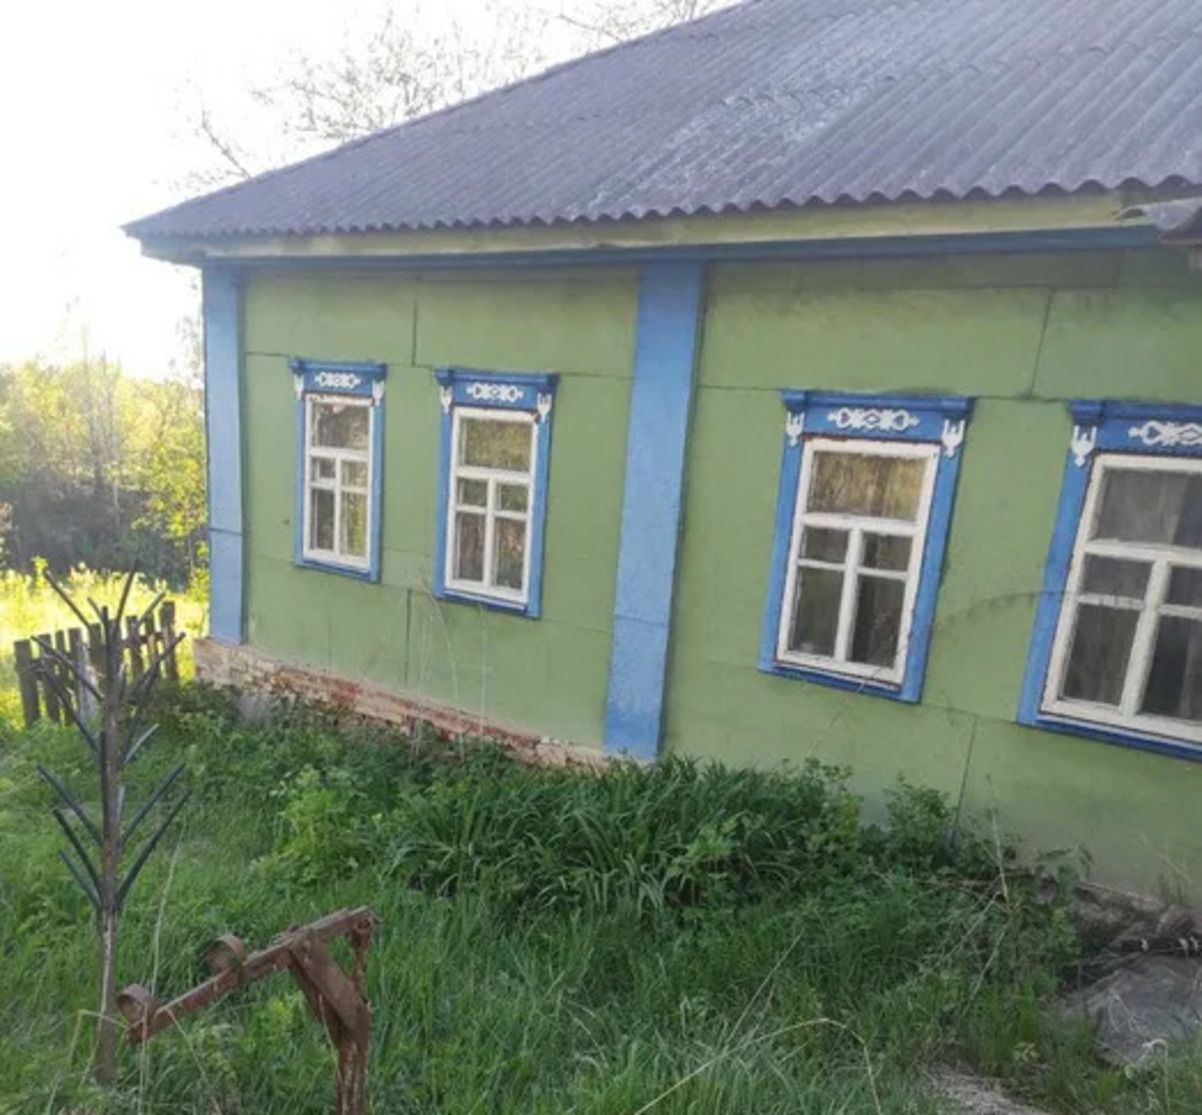 Будинок за 30 тисяч гривень - де в Україні продають таке житло - Нерухомість